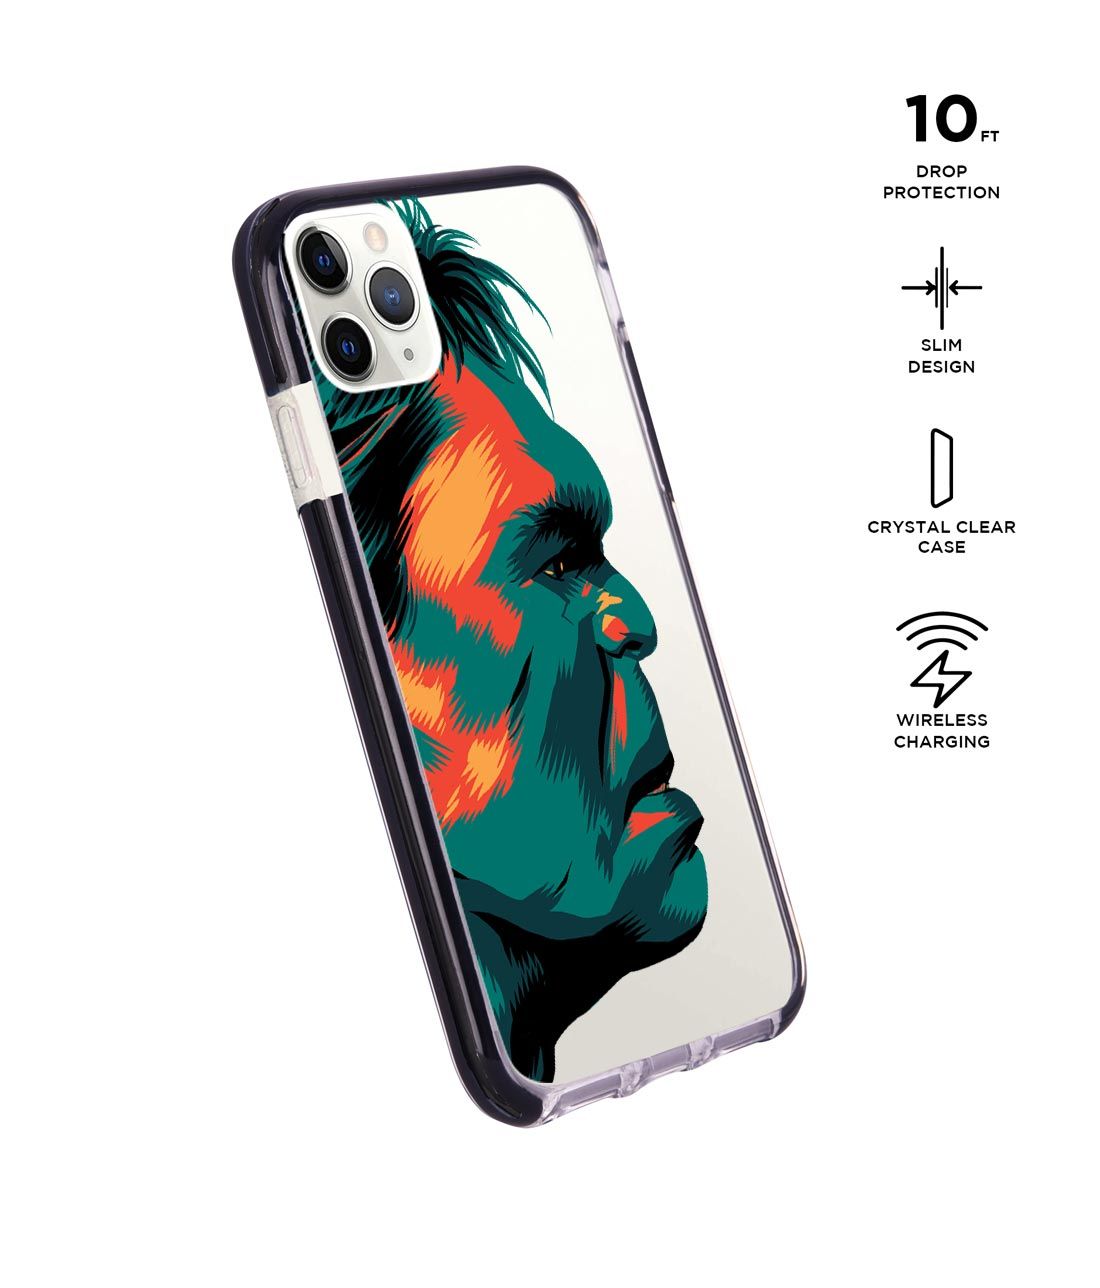 Illuminated Hulk - Extreme Phone Case for iPhone 11 Pro